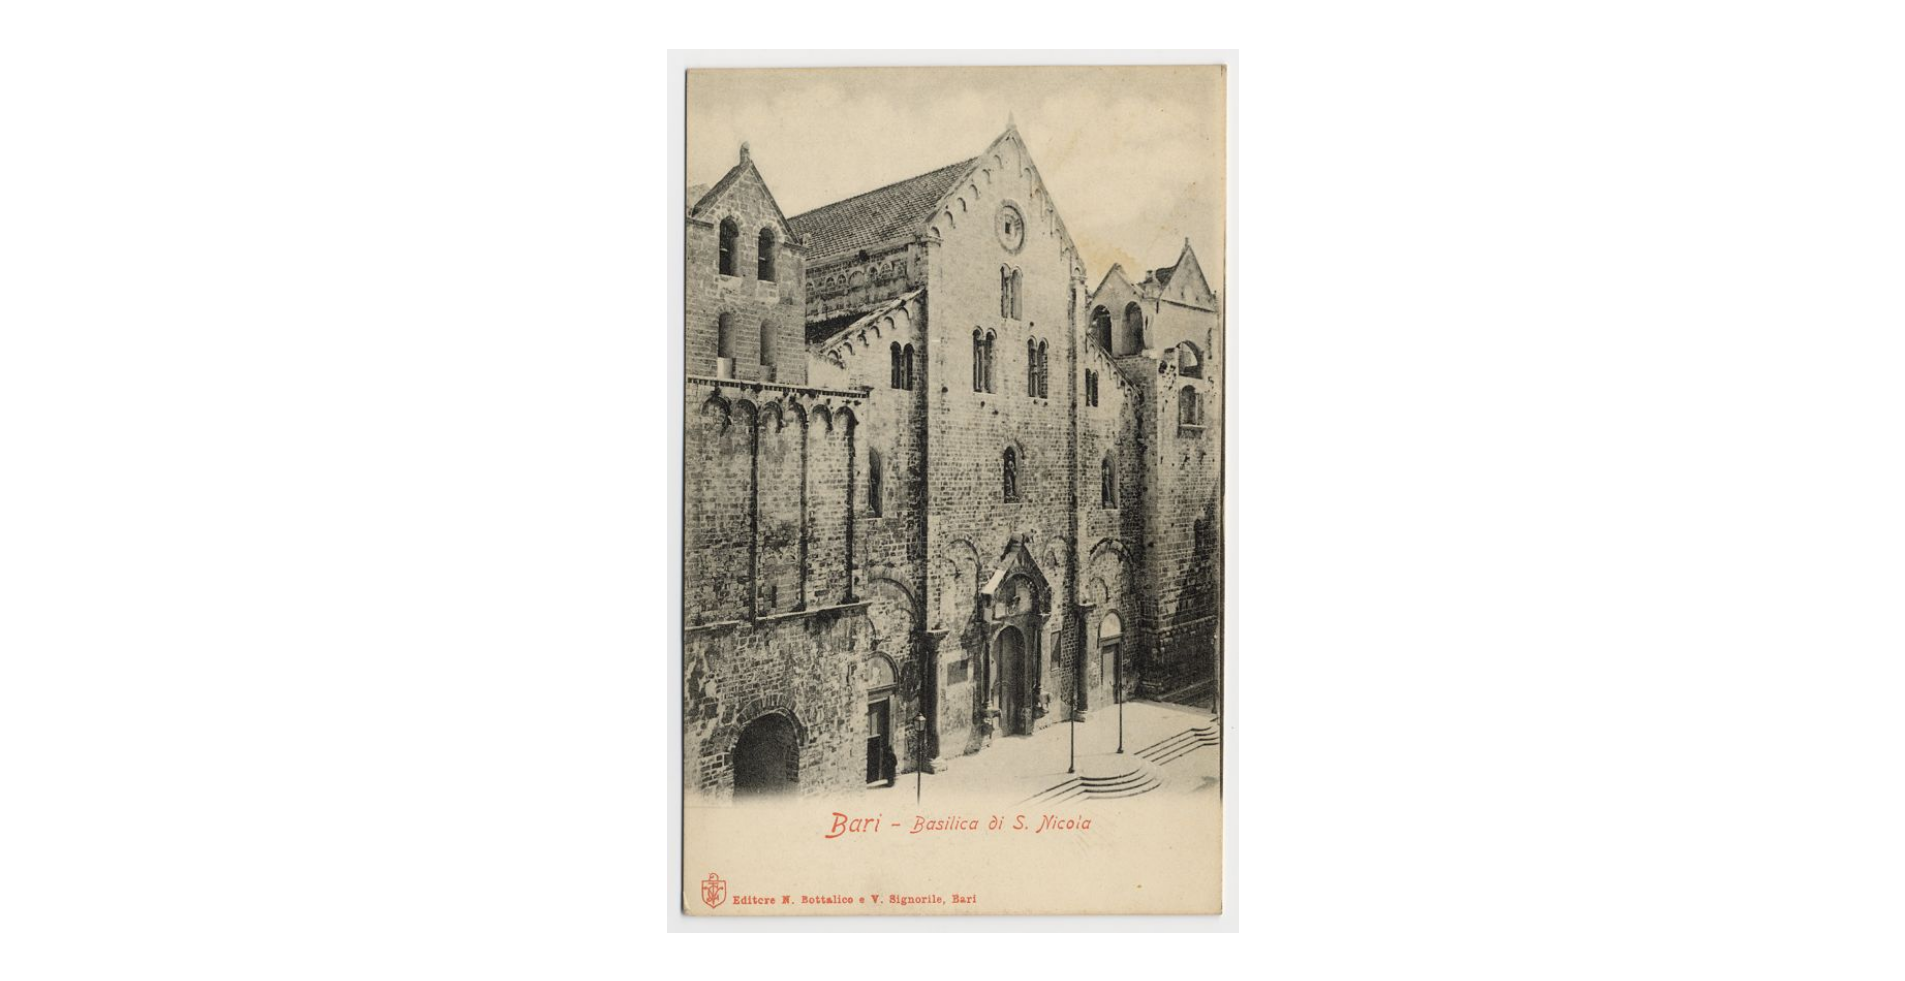 Fotografo non identificato, Bari - Basilica di S. Nicola di Bari, 1905, cartolina, FFC013993